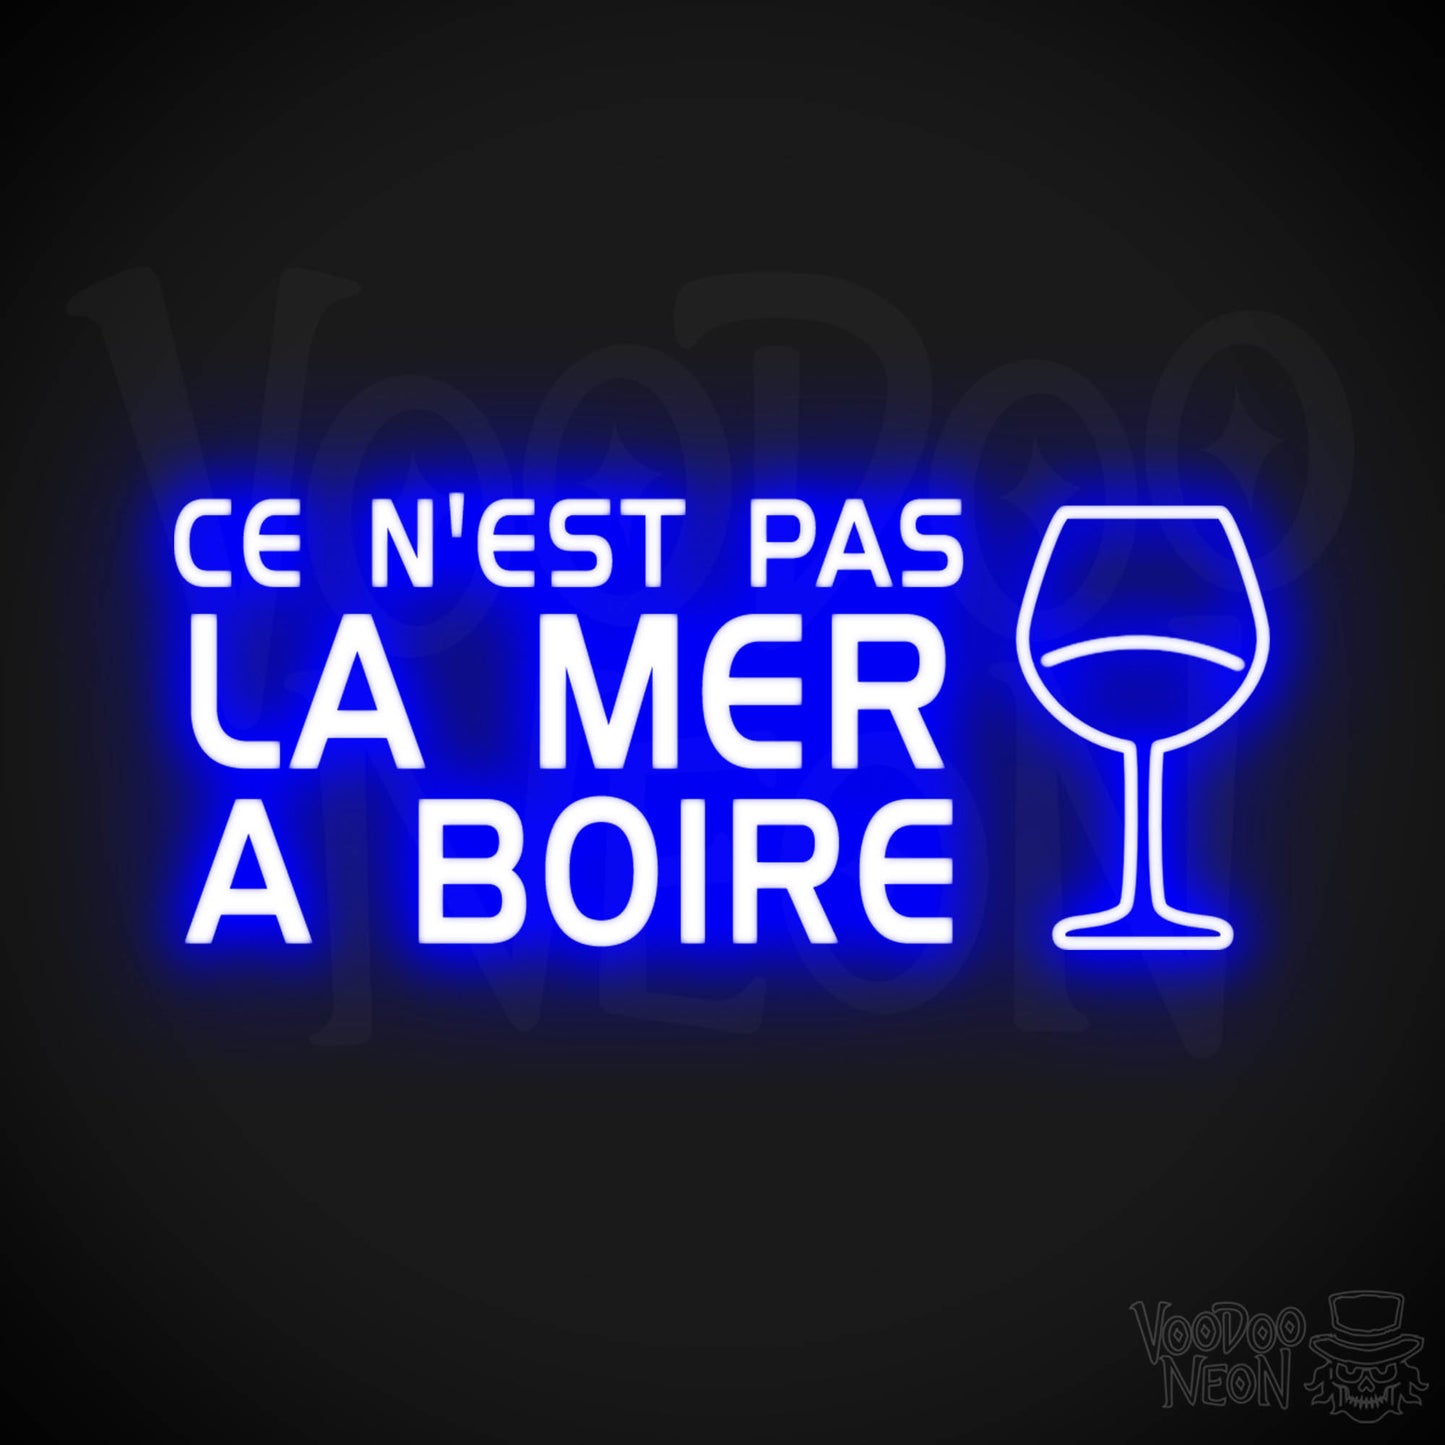 Ce N'est Pas La Mer a Boire Neon Sign - LED Lights - Color Dark Blue